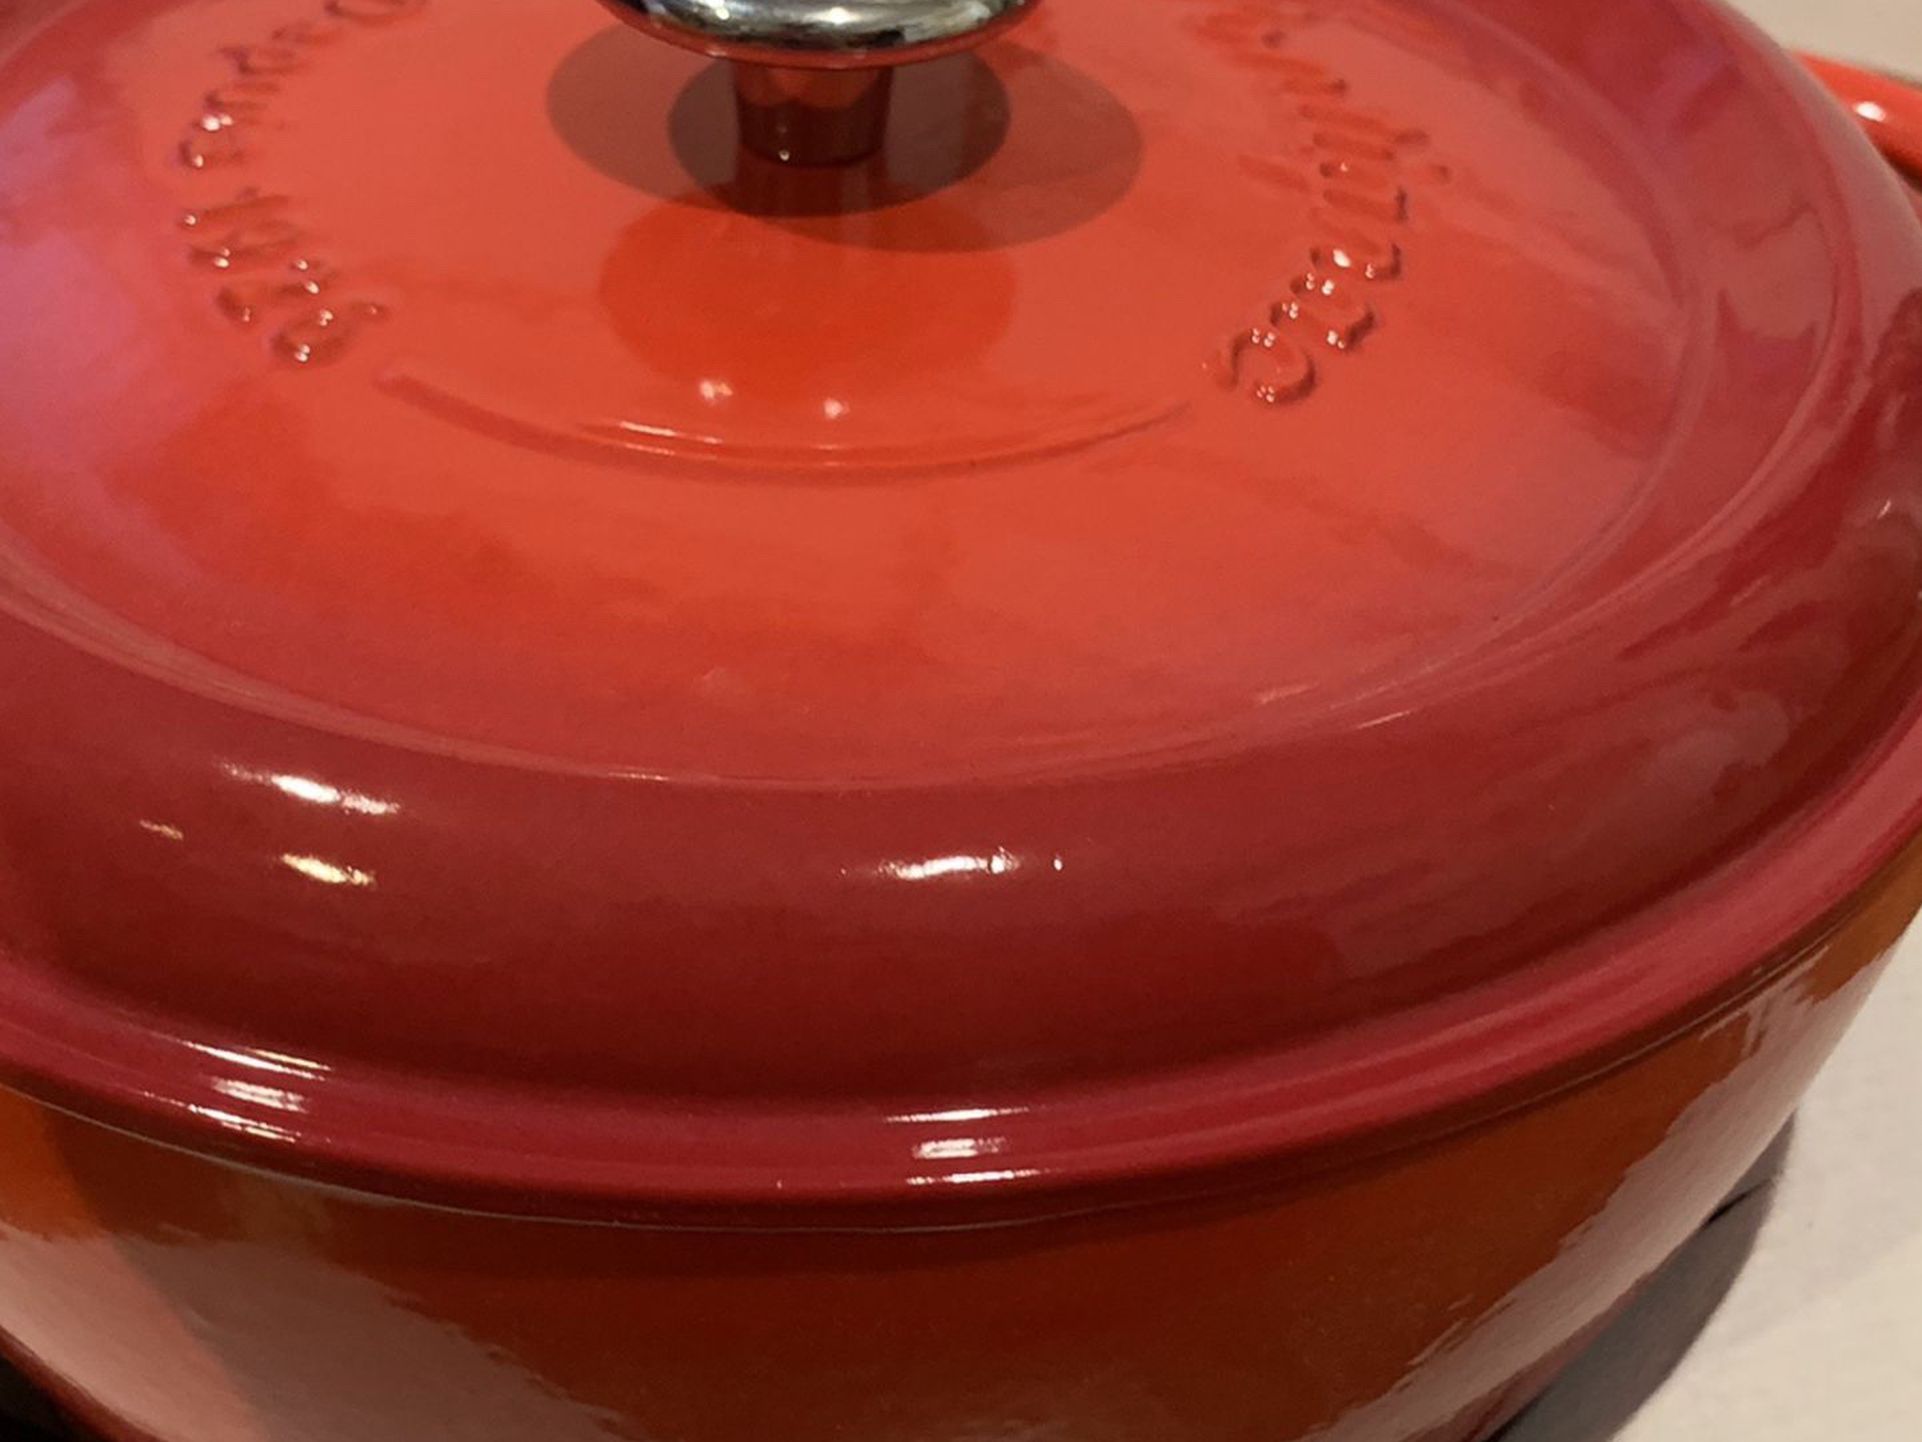 New in box Fontignac 5.25Q red Cast Iron Pot